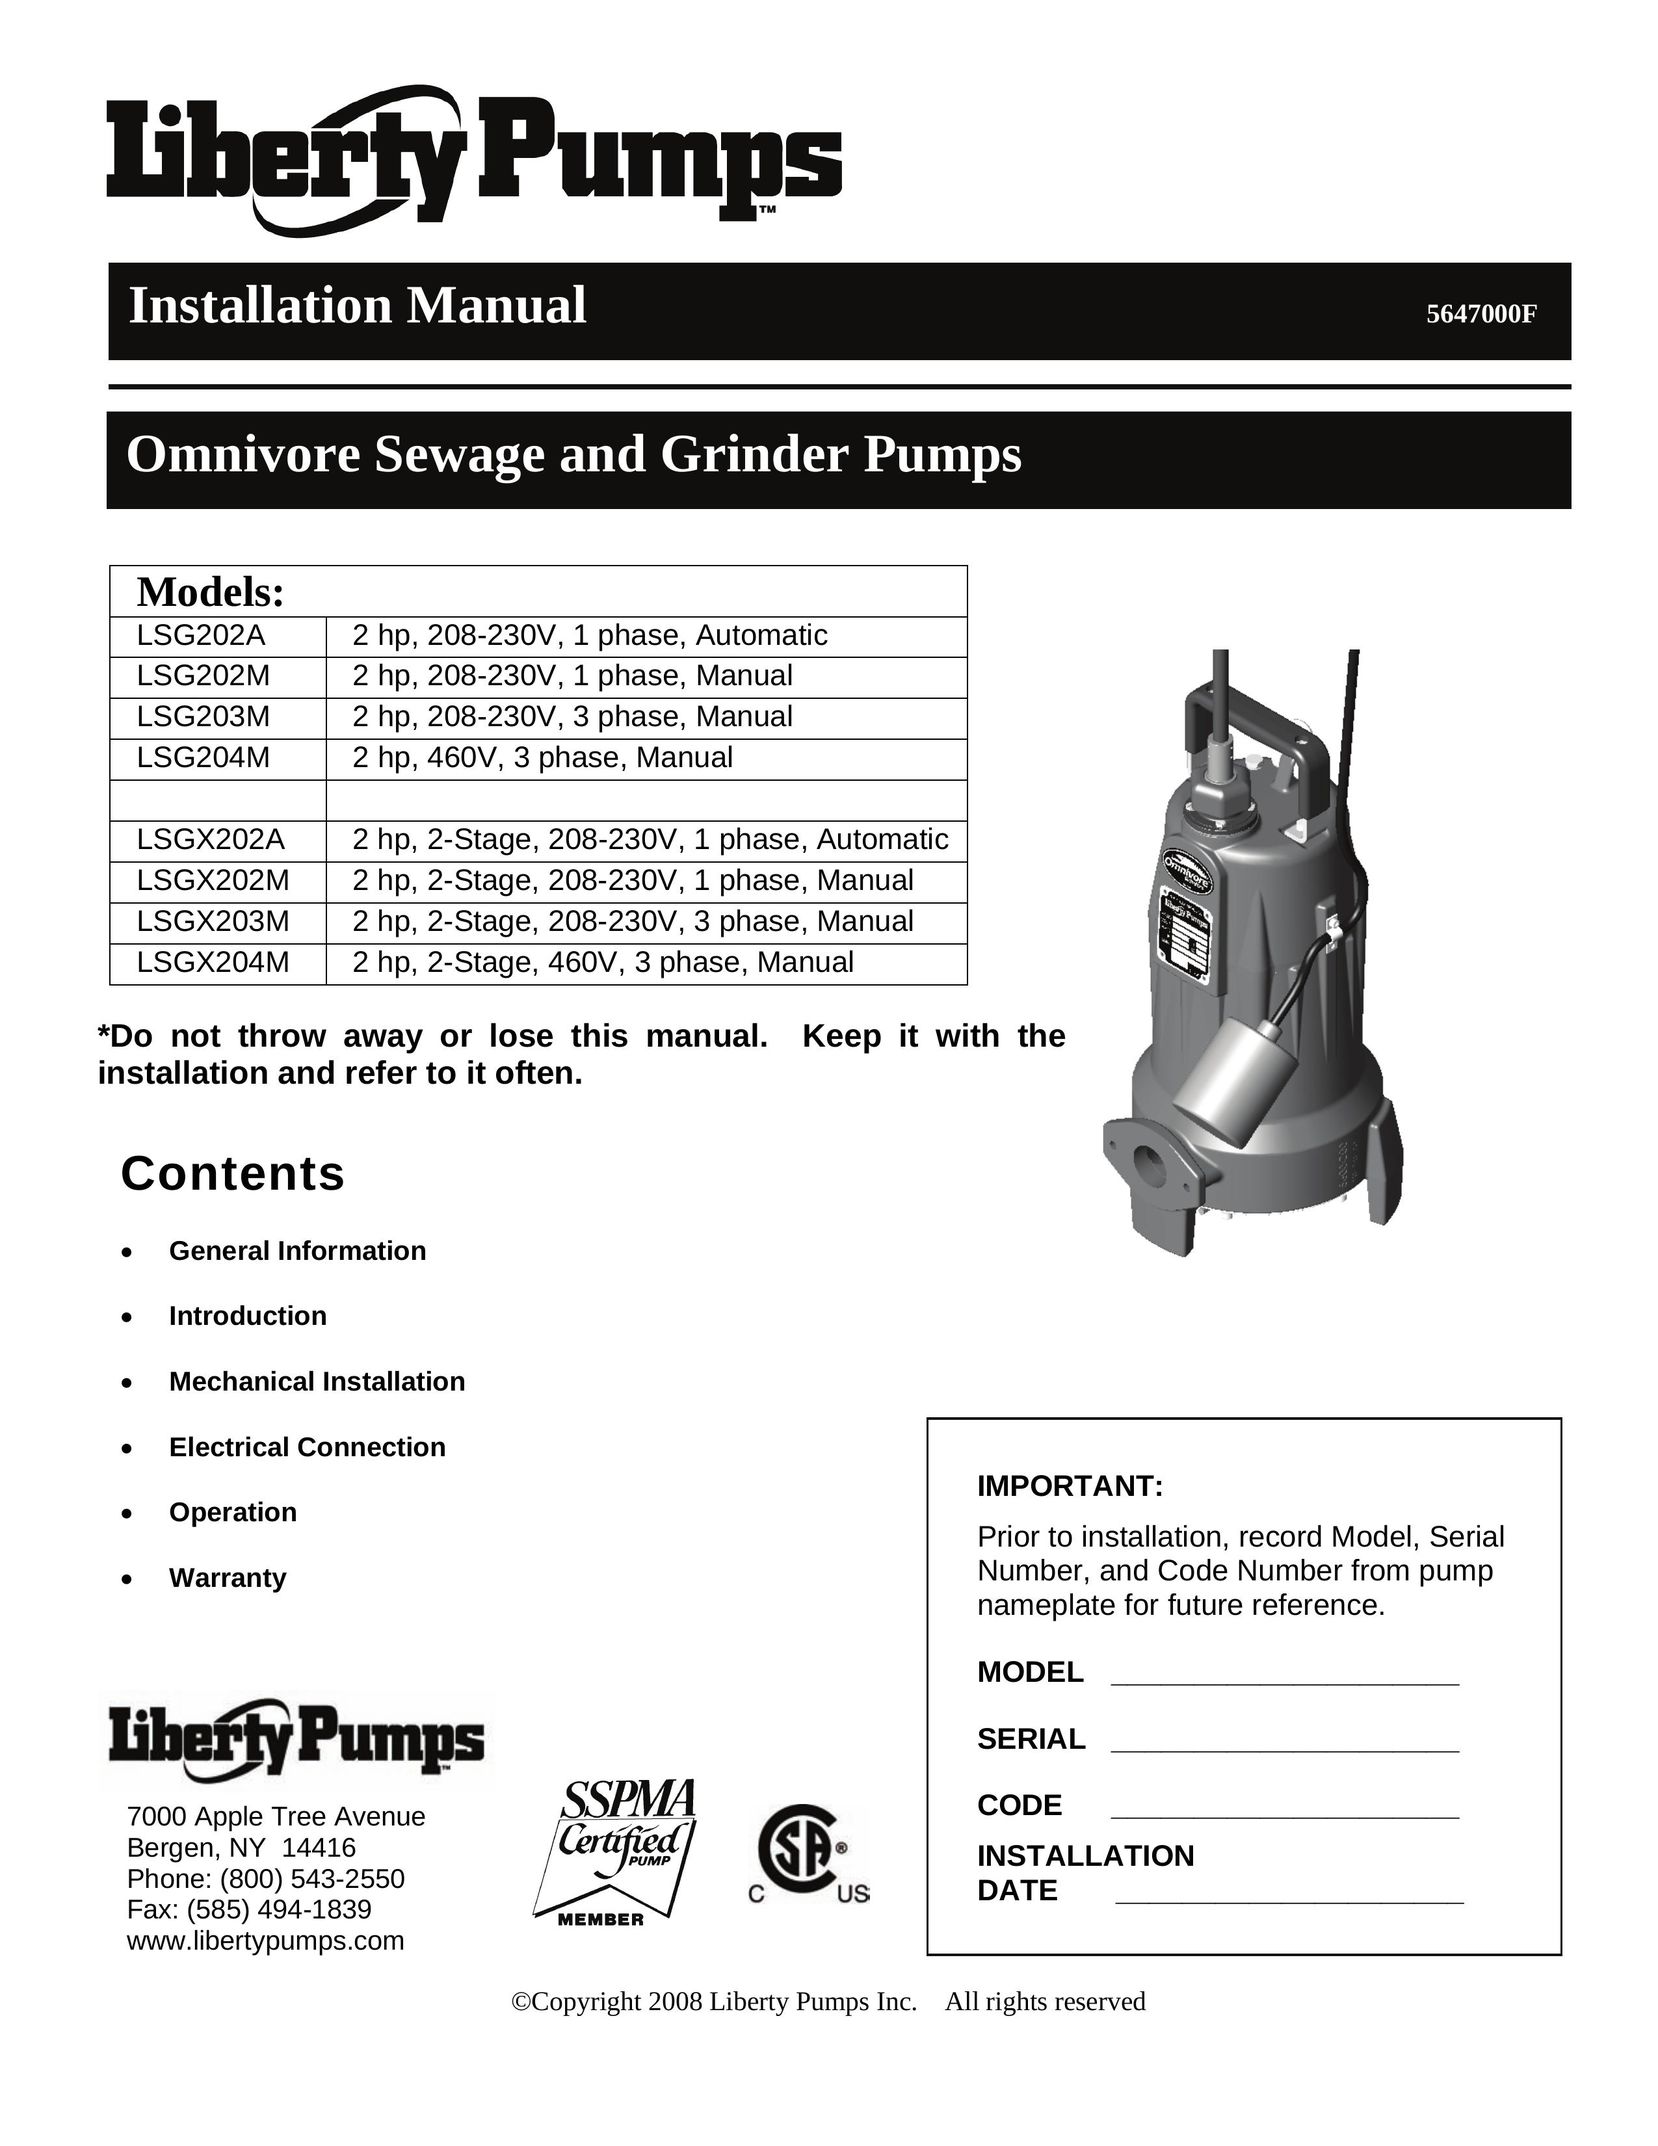 HP (Hewlett-Packard) LSG202M Grinder User Manual